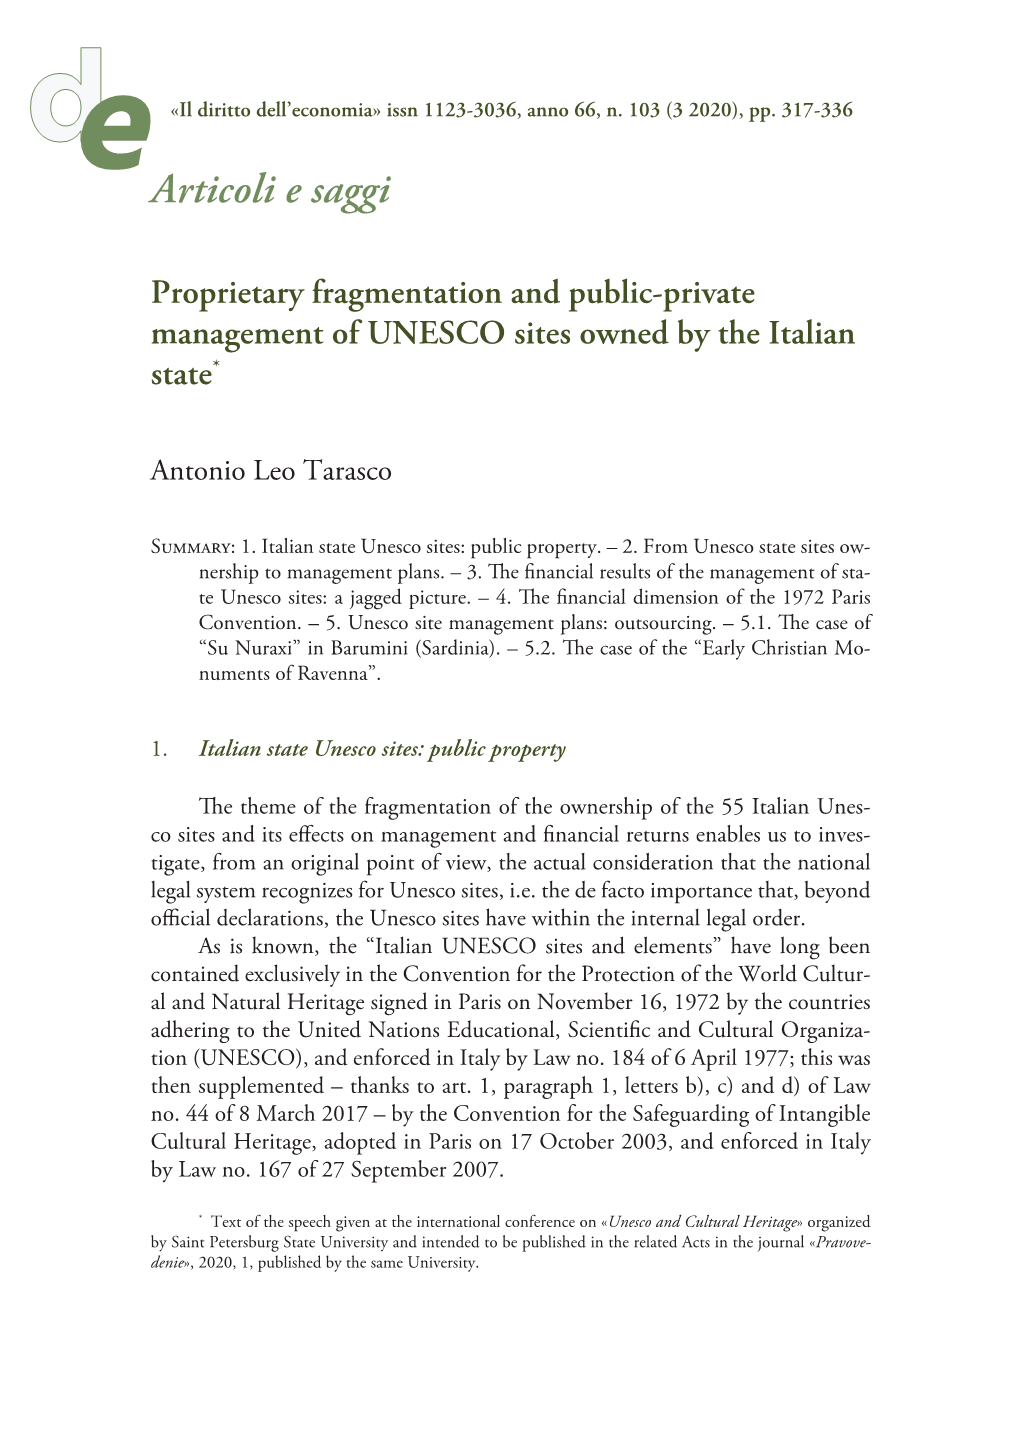 Articoli E Saggi Proprietary Fragmentation and Public-Private